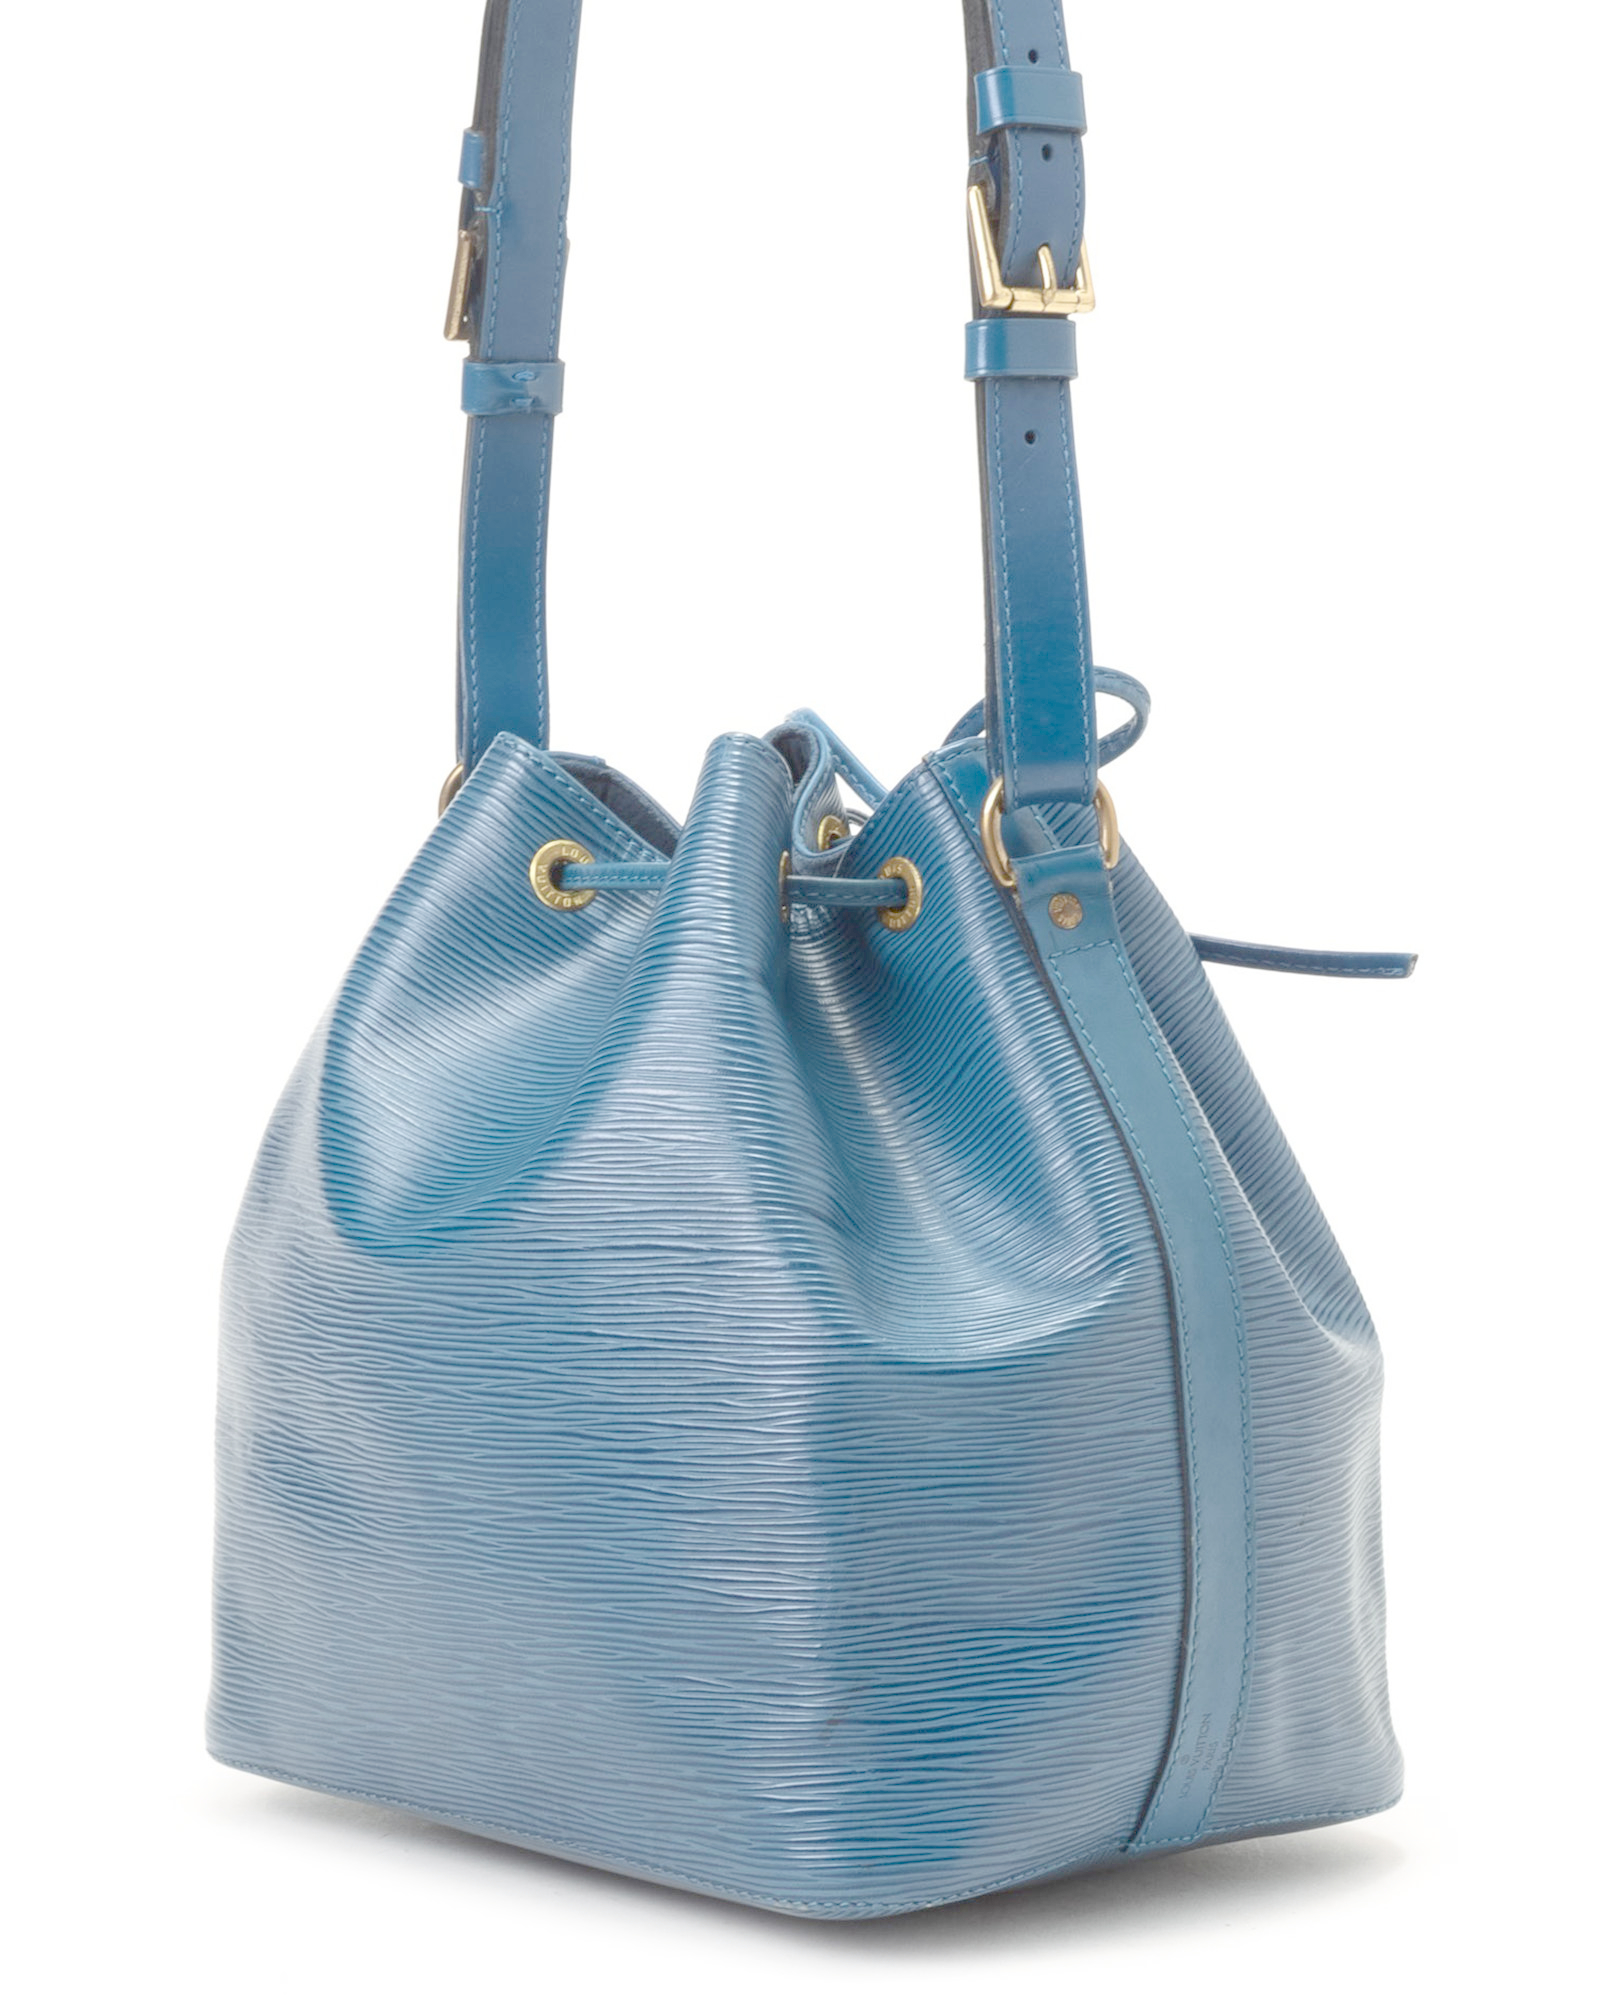 Lyst - Louis Vuitton Blue Shoulder Bag - Vintage in Blue